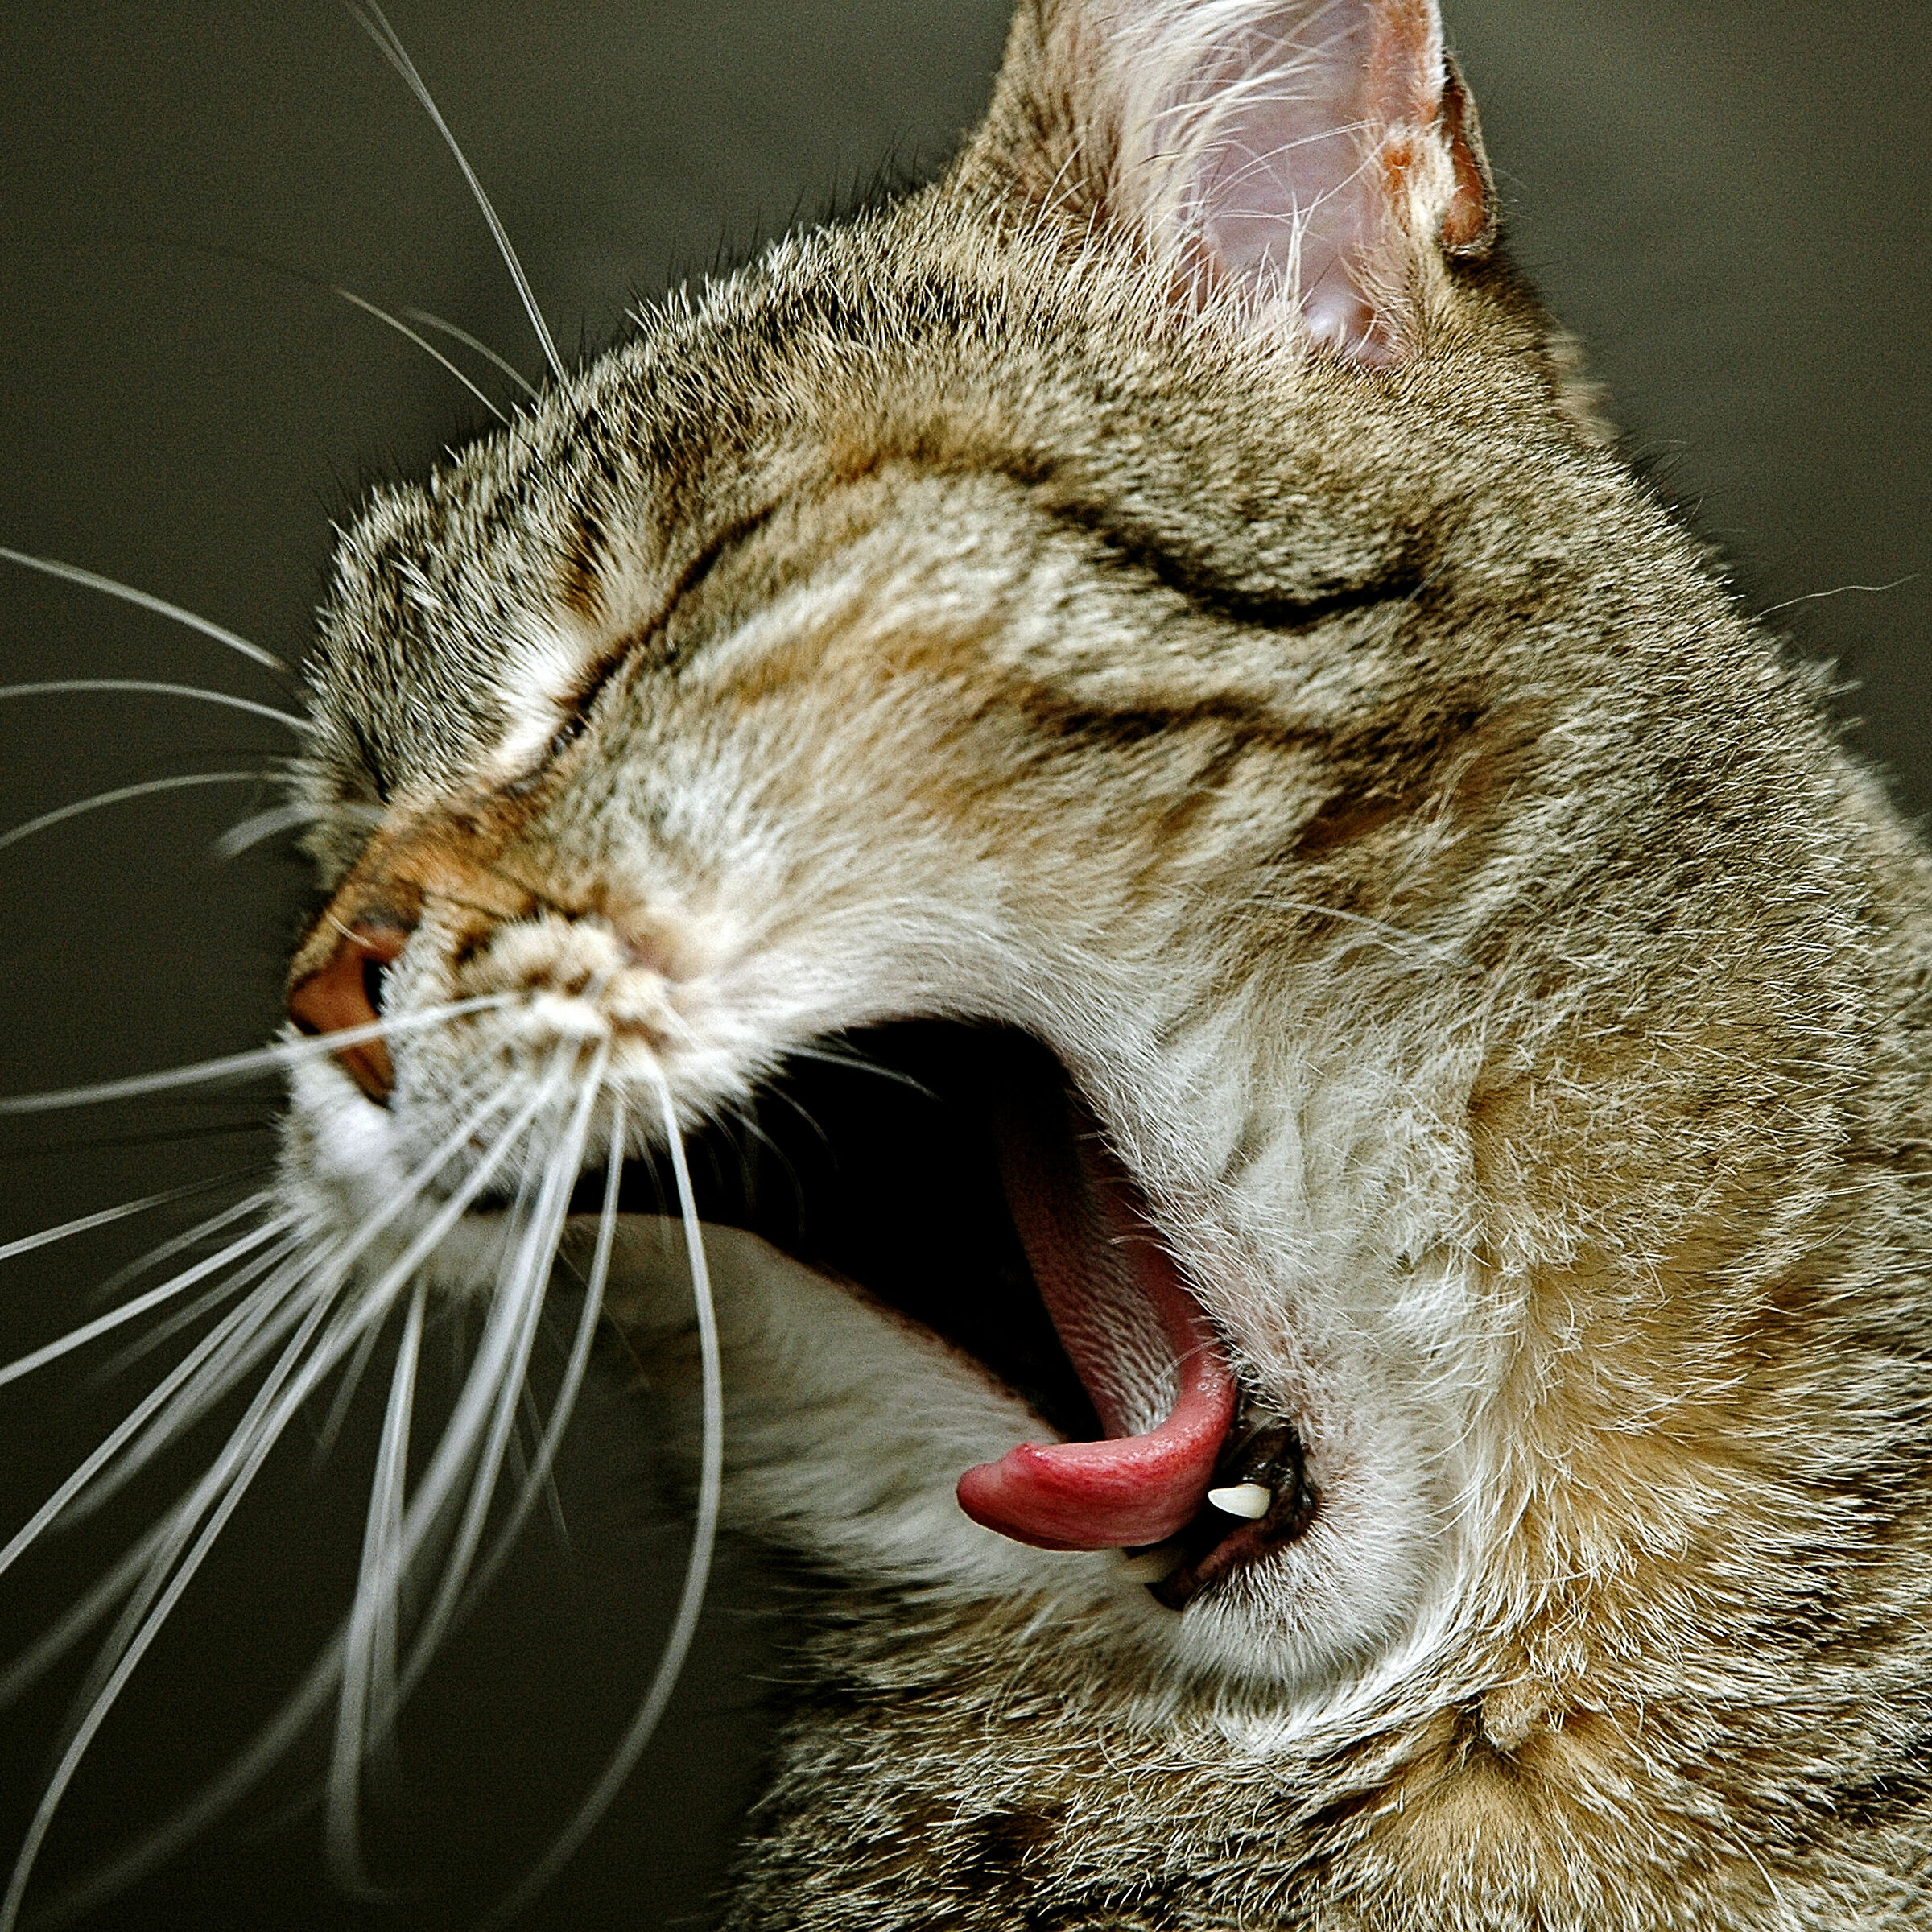 feline yawn...